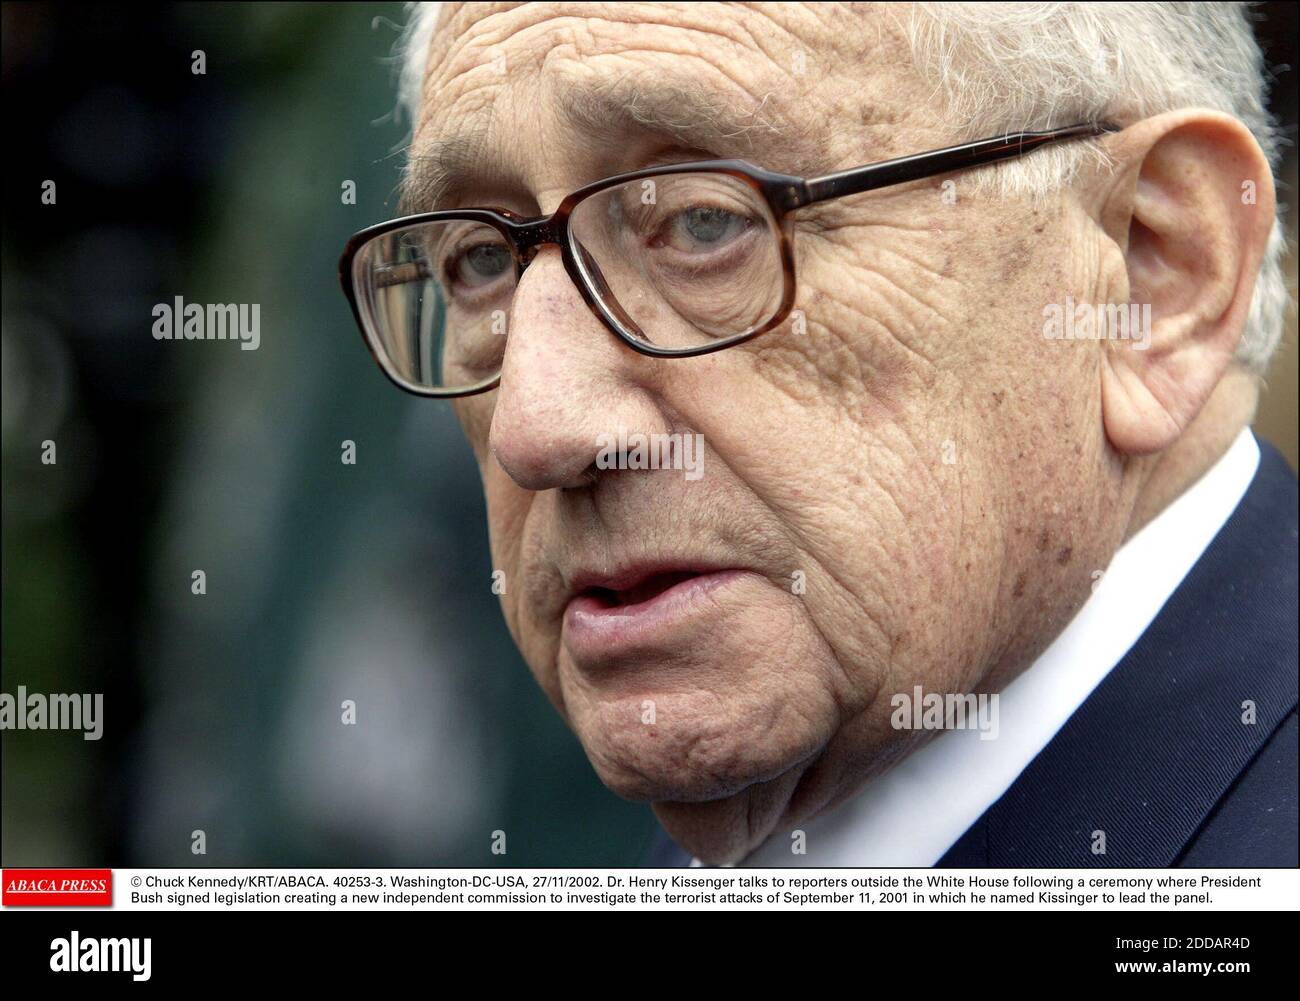 NO HAY PELÍCULA, NO HAY VIDEO, NO HAY TELEVISIÓN, NO HAY DOCUMENTAL - © CHUCK KENNEDY/KRT/ABACA. 40253-3. Washington-DC-USA, 27/11/2002. El Dr. Henry Kissinger habla con reporteros fuera de la Casa Blanca después de una ceremonia en la que el Presidente Bush firmó una legislación que crea una nueva comisión independiente para investigar el terrorismo Foto de stock